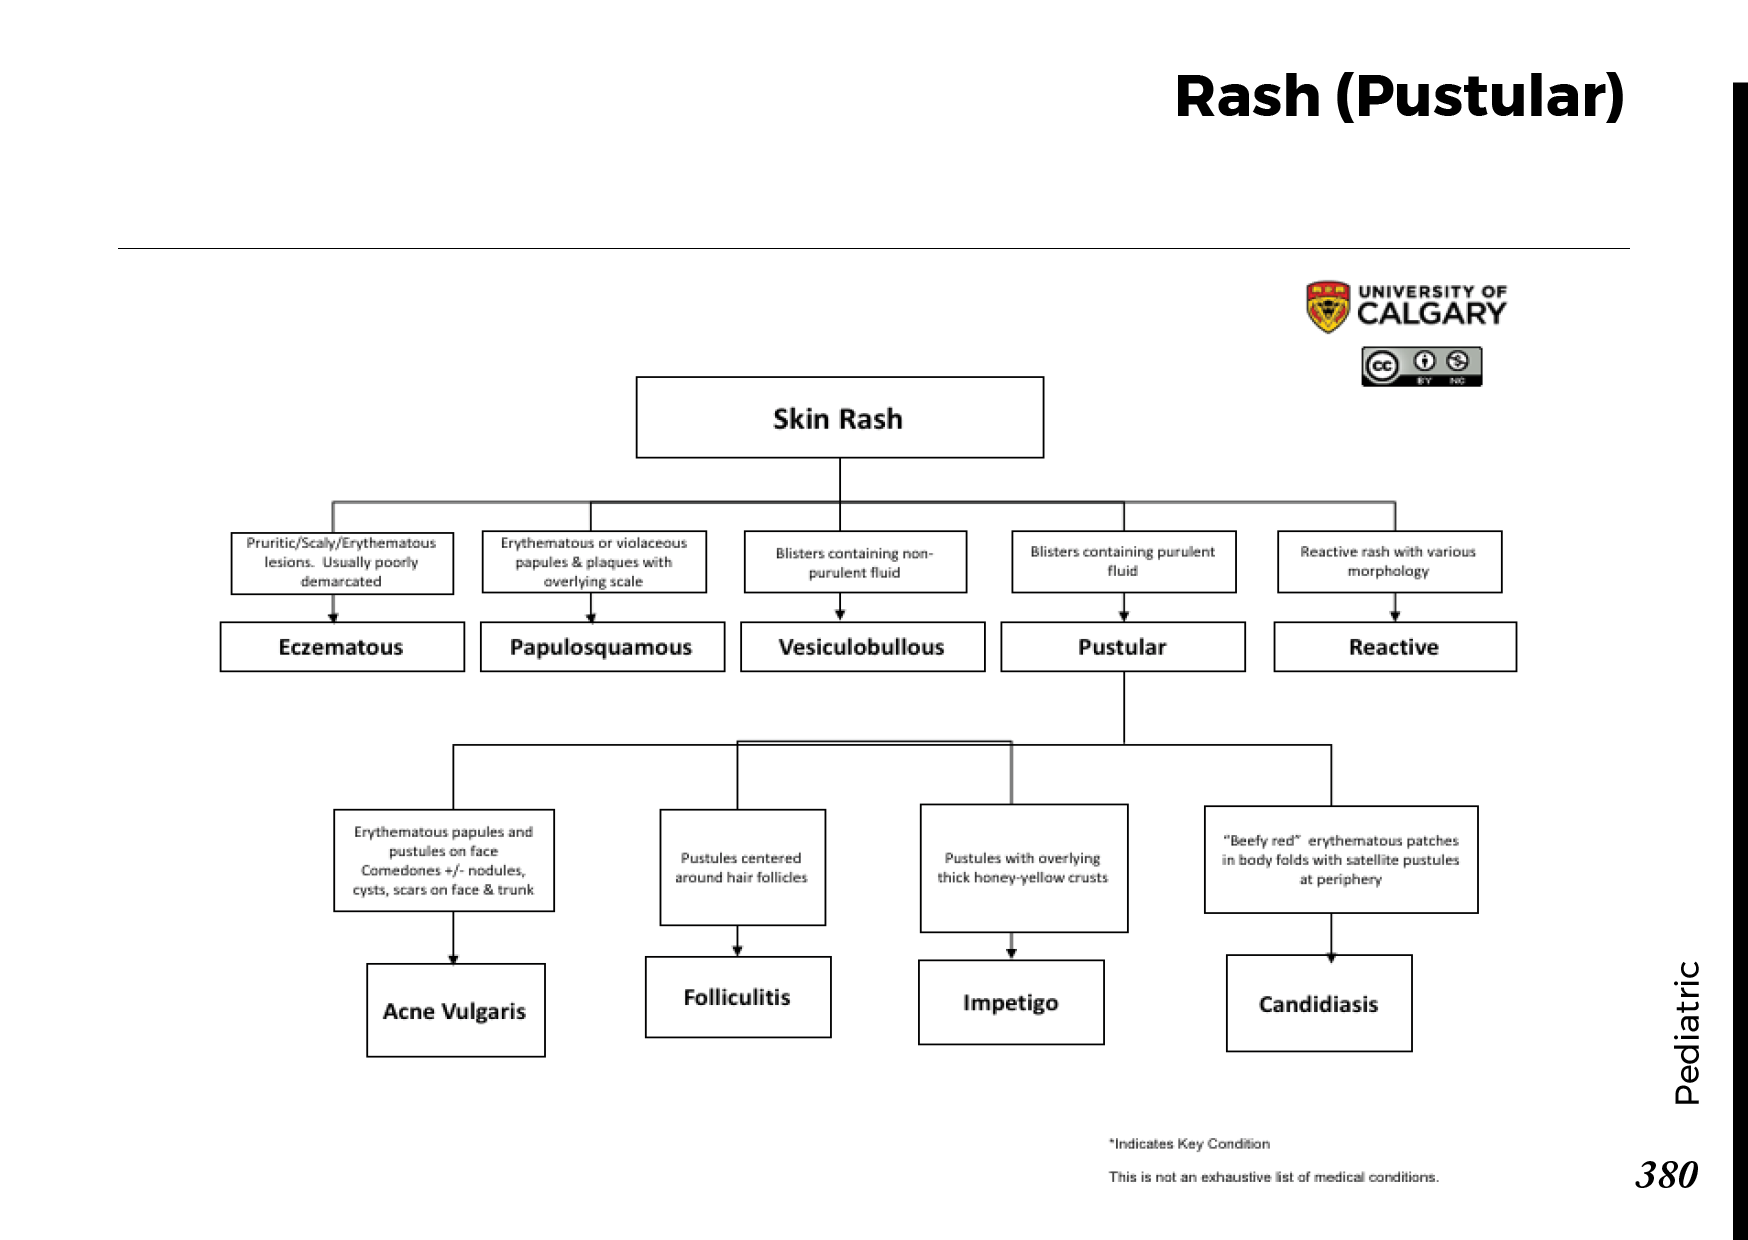 RASH (PUSTULAR) Scheme